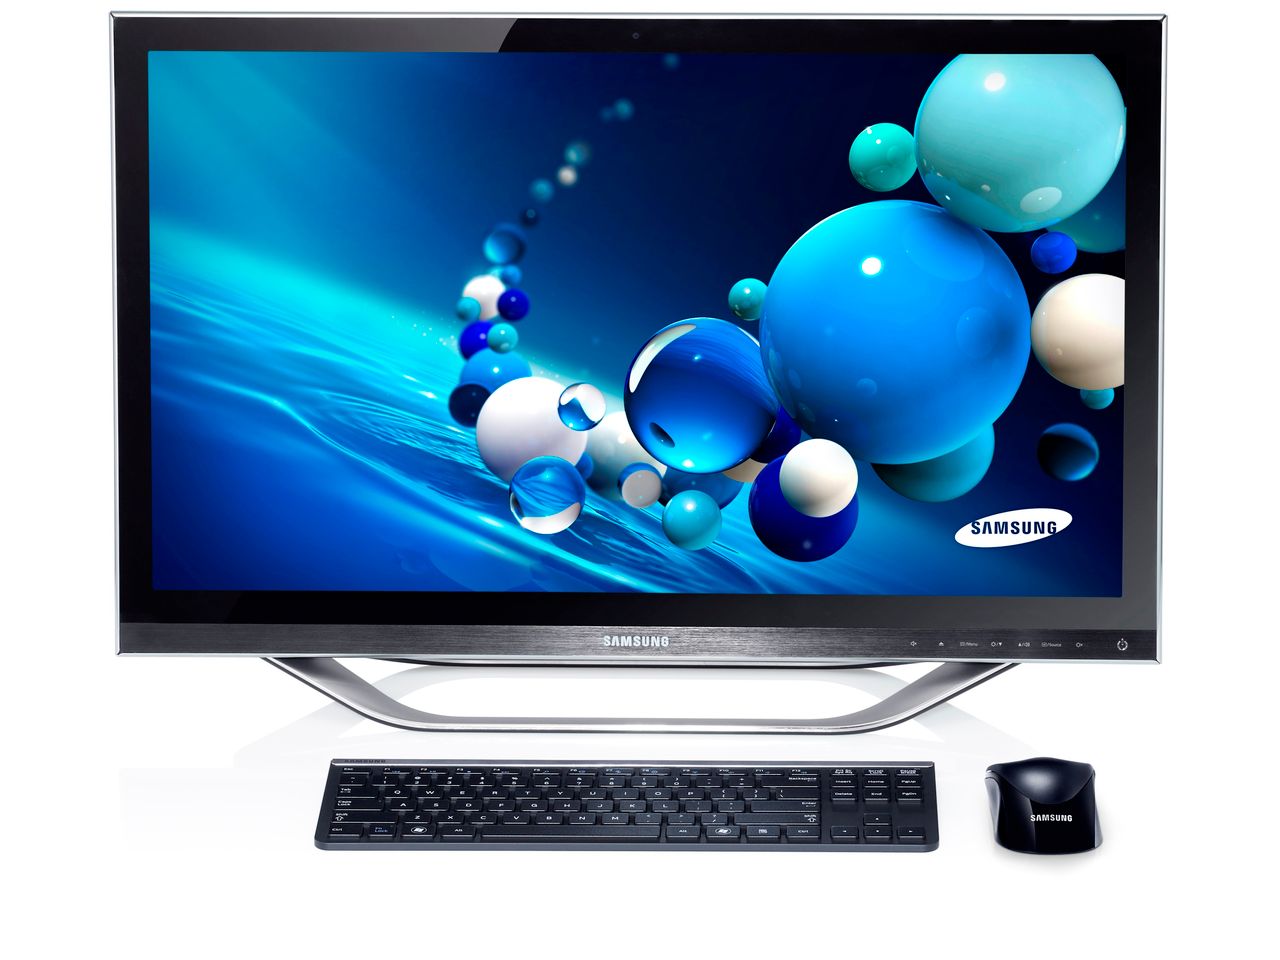 Samsung prezentuje – komputery All-in-One serii 7 [IFA 2012]